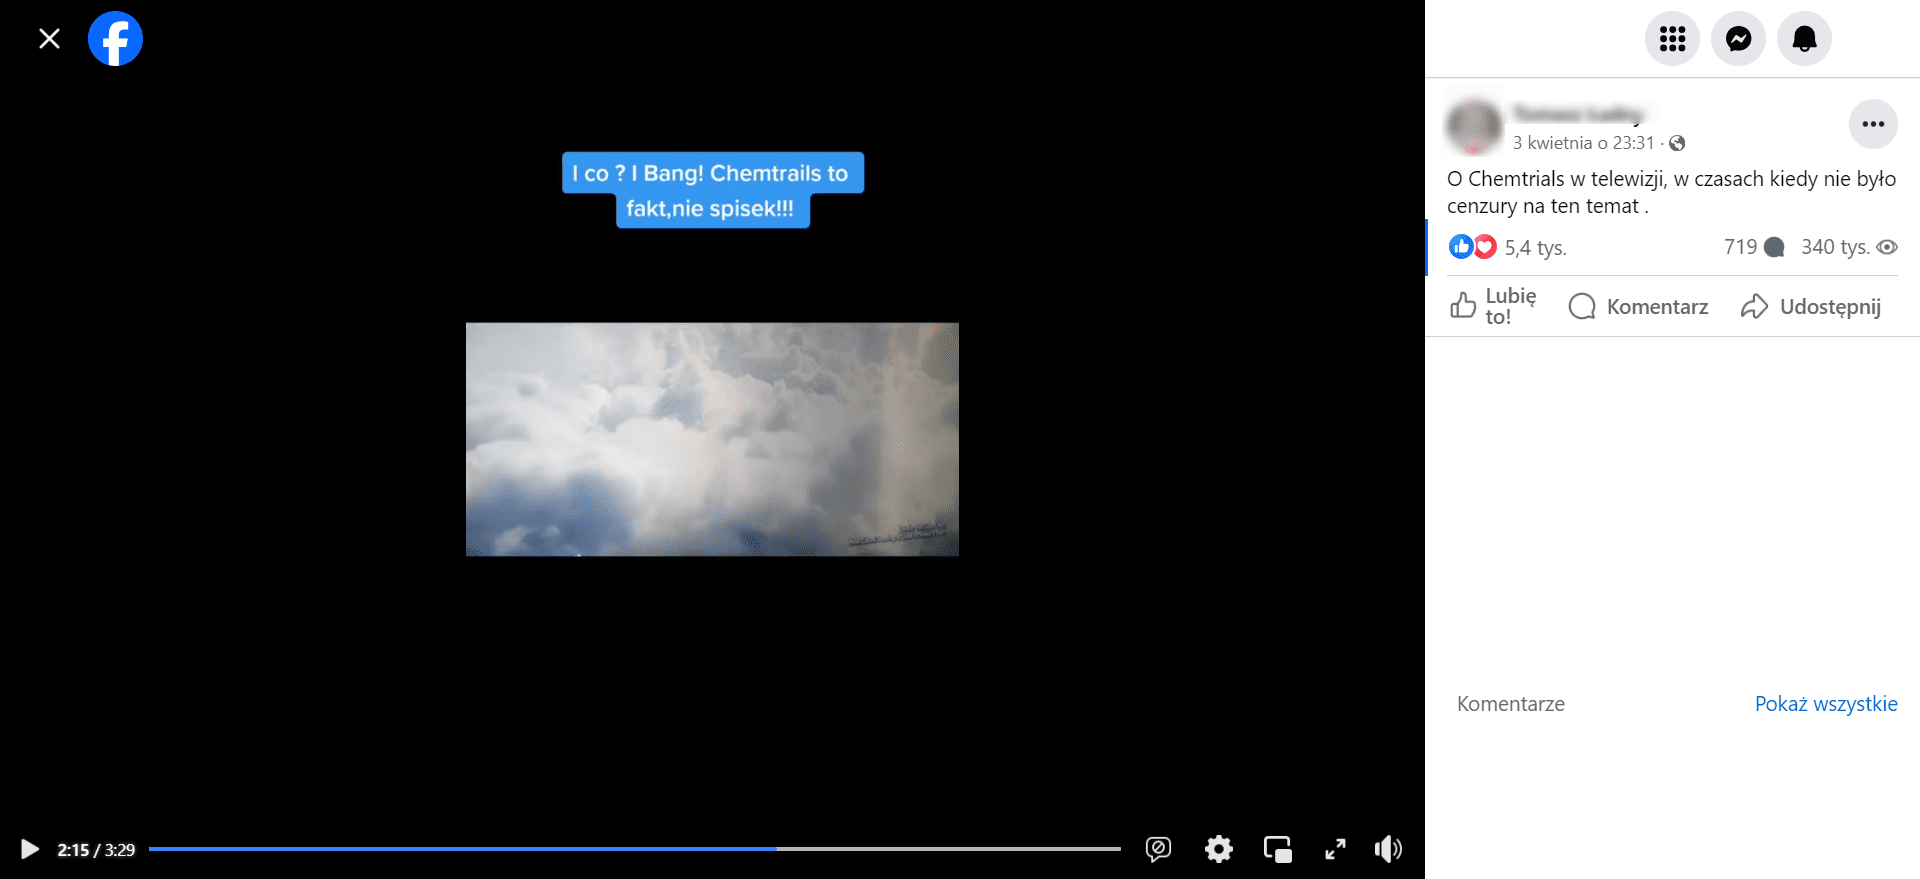 Zrzut ekranu z Facebooka. Widoczne nagranie z widokiem chmur oraz podpis: „I co? Bang! Chemtrails to fakt, nie spisek!!!”. Liczba wyświetleń: 340 tys., liczba komentarzy: 719, liczba reakcji: 5,4 tys.